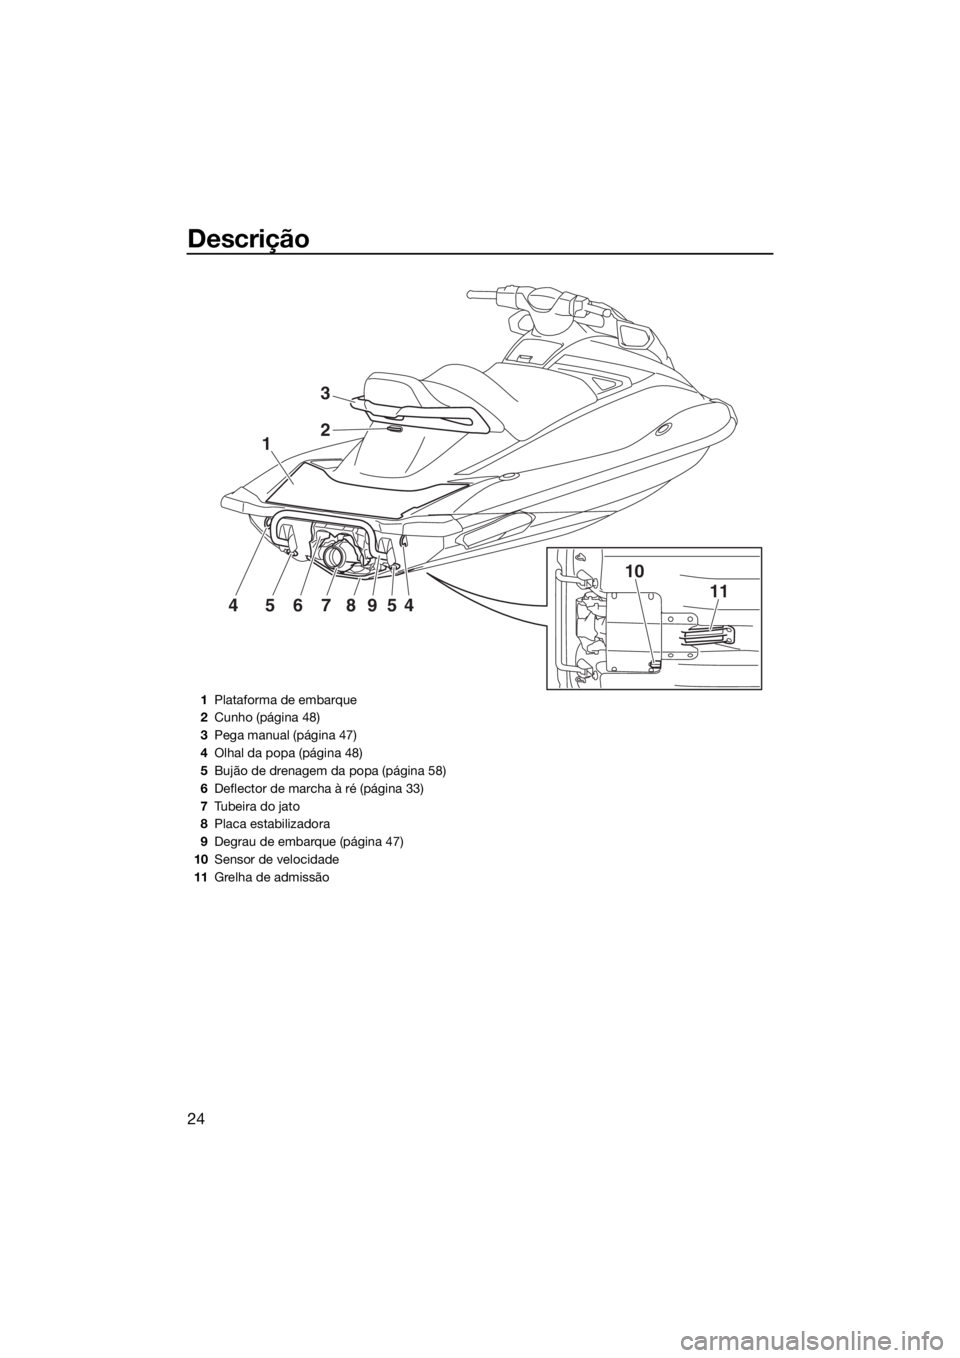 YAMAHA VX 2018  Manual de utilização (in Portuguese) Descrição
24
1
10
1145678954
2
3
1Plataforma de embarque
2Cunho (página 48)
3Pega manual (página 47)
4Olhal da popa (página 48)
5Bujão de drenagem da popa (página 58)
6Deflector de marcha à r�